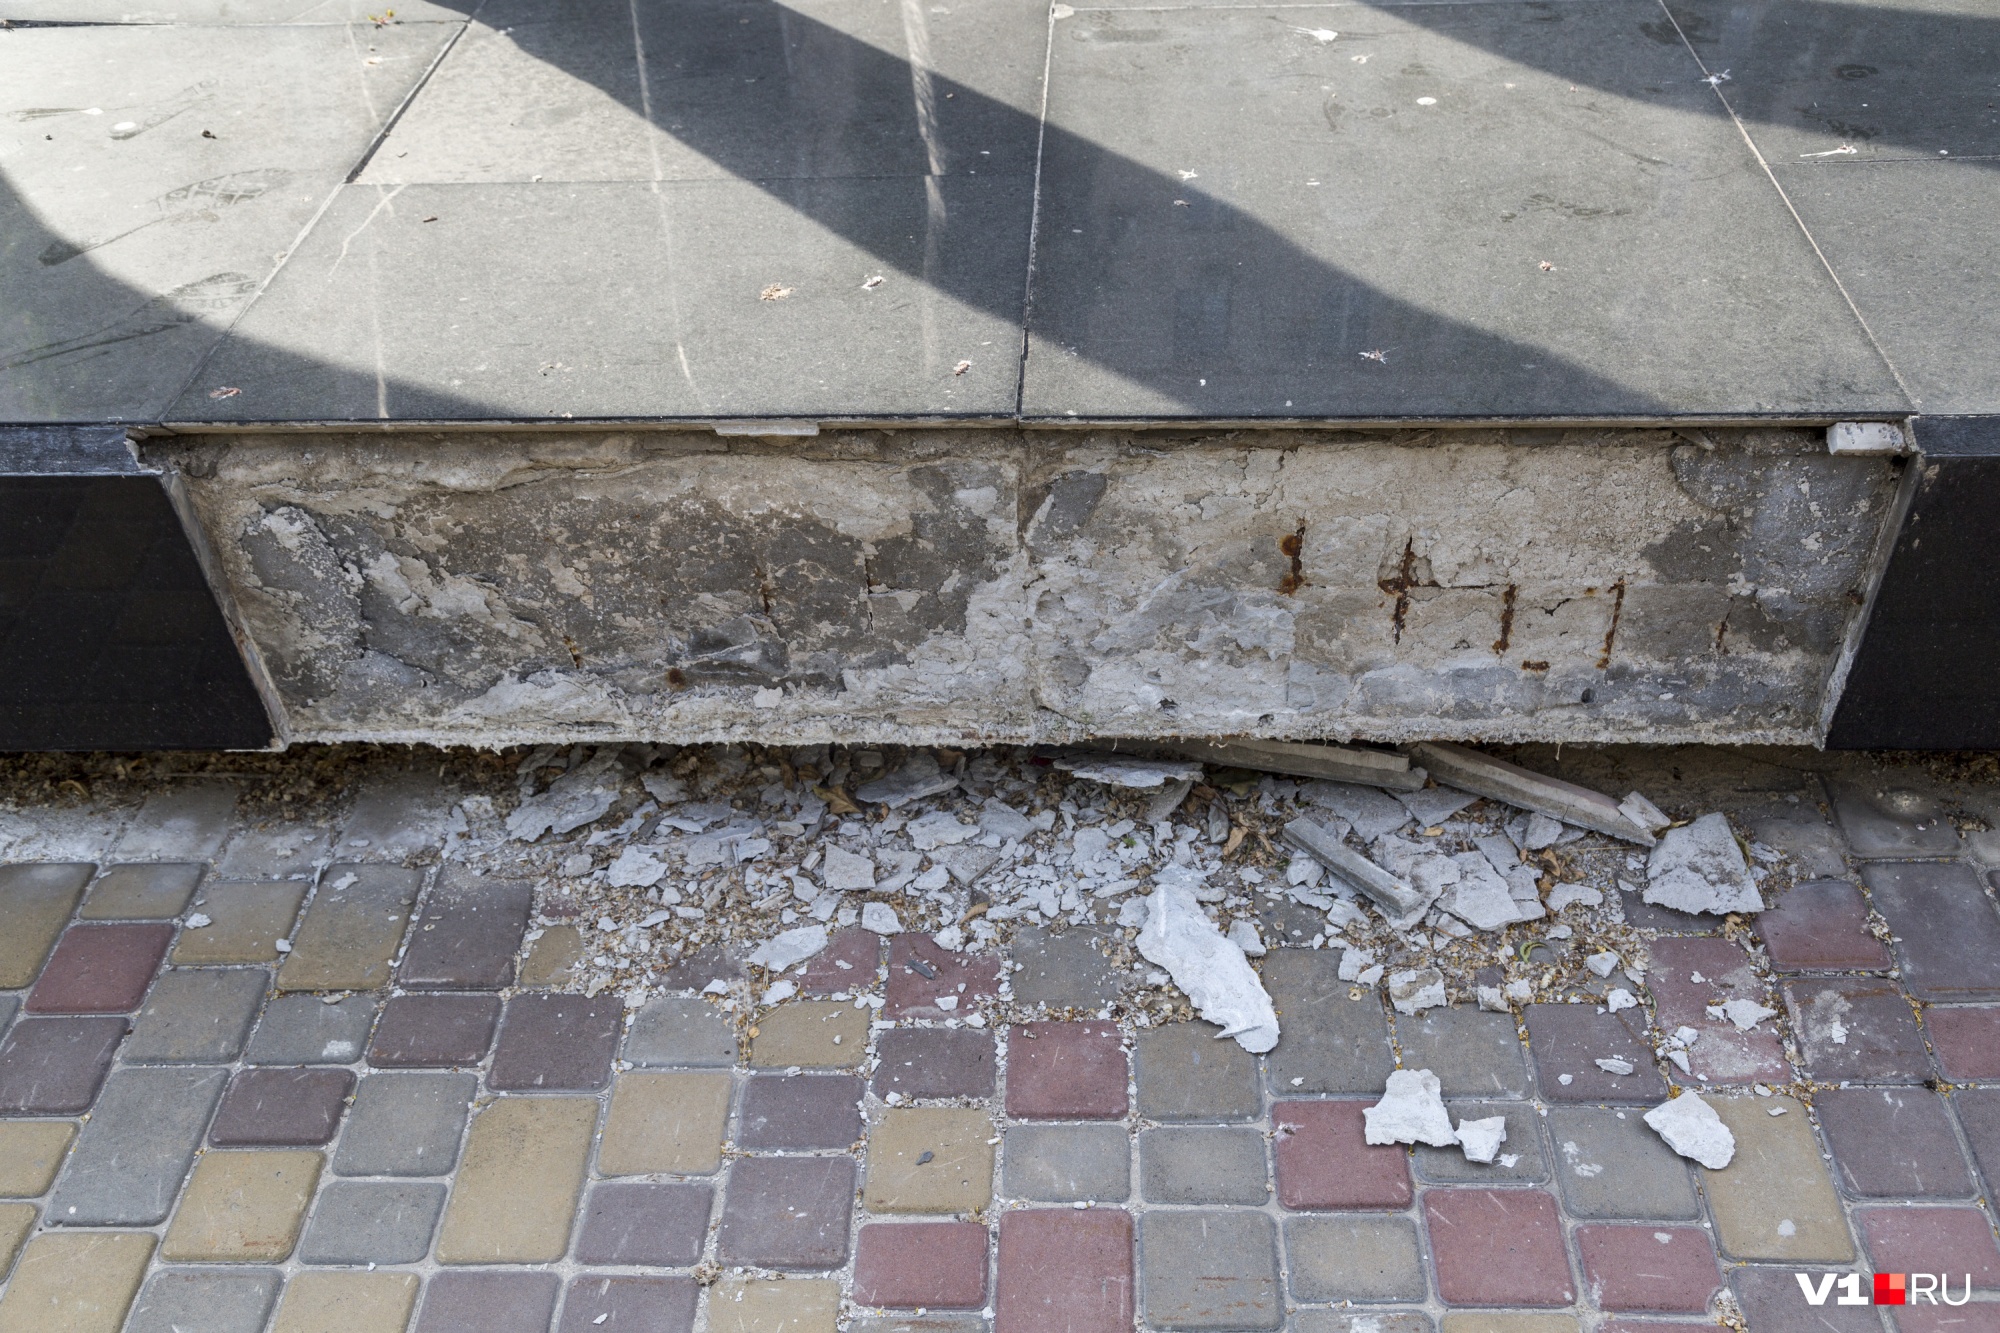 Часть гранитных плит с основания фундамента попросту отвалилась